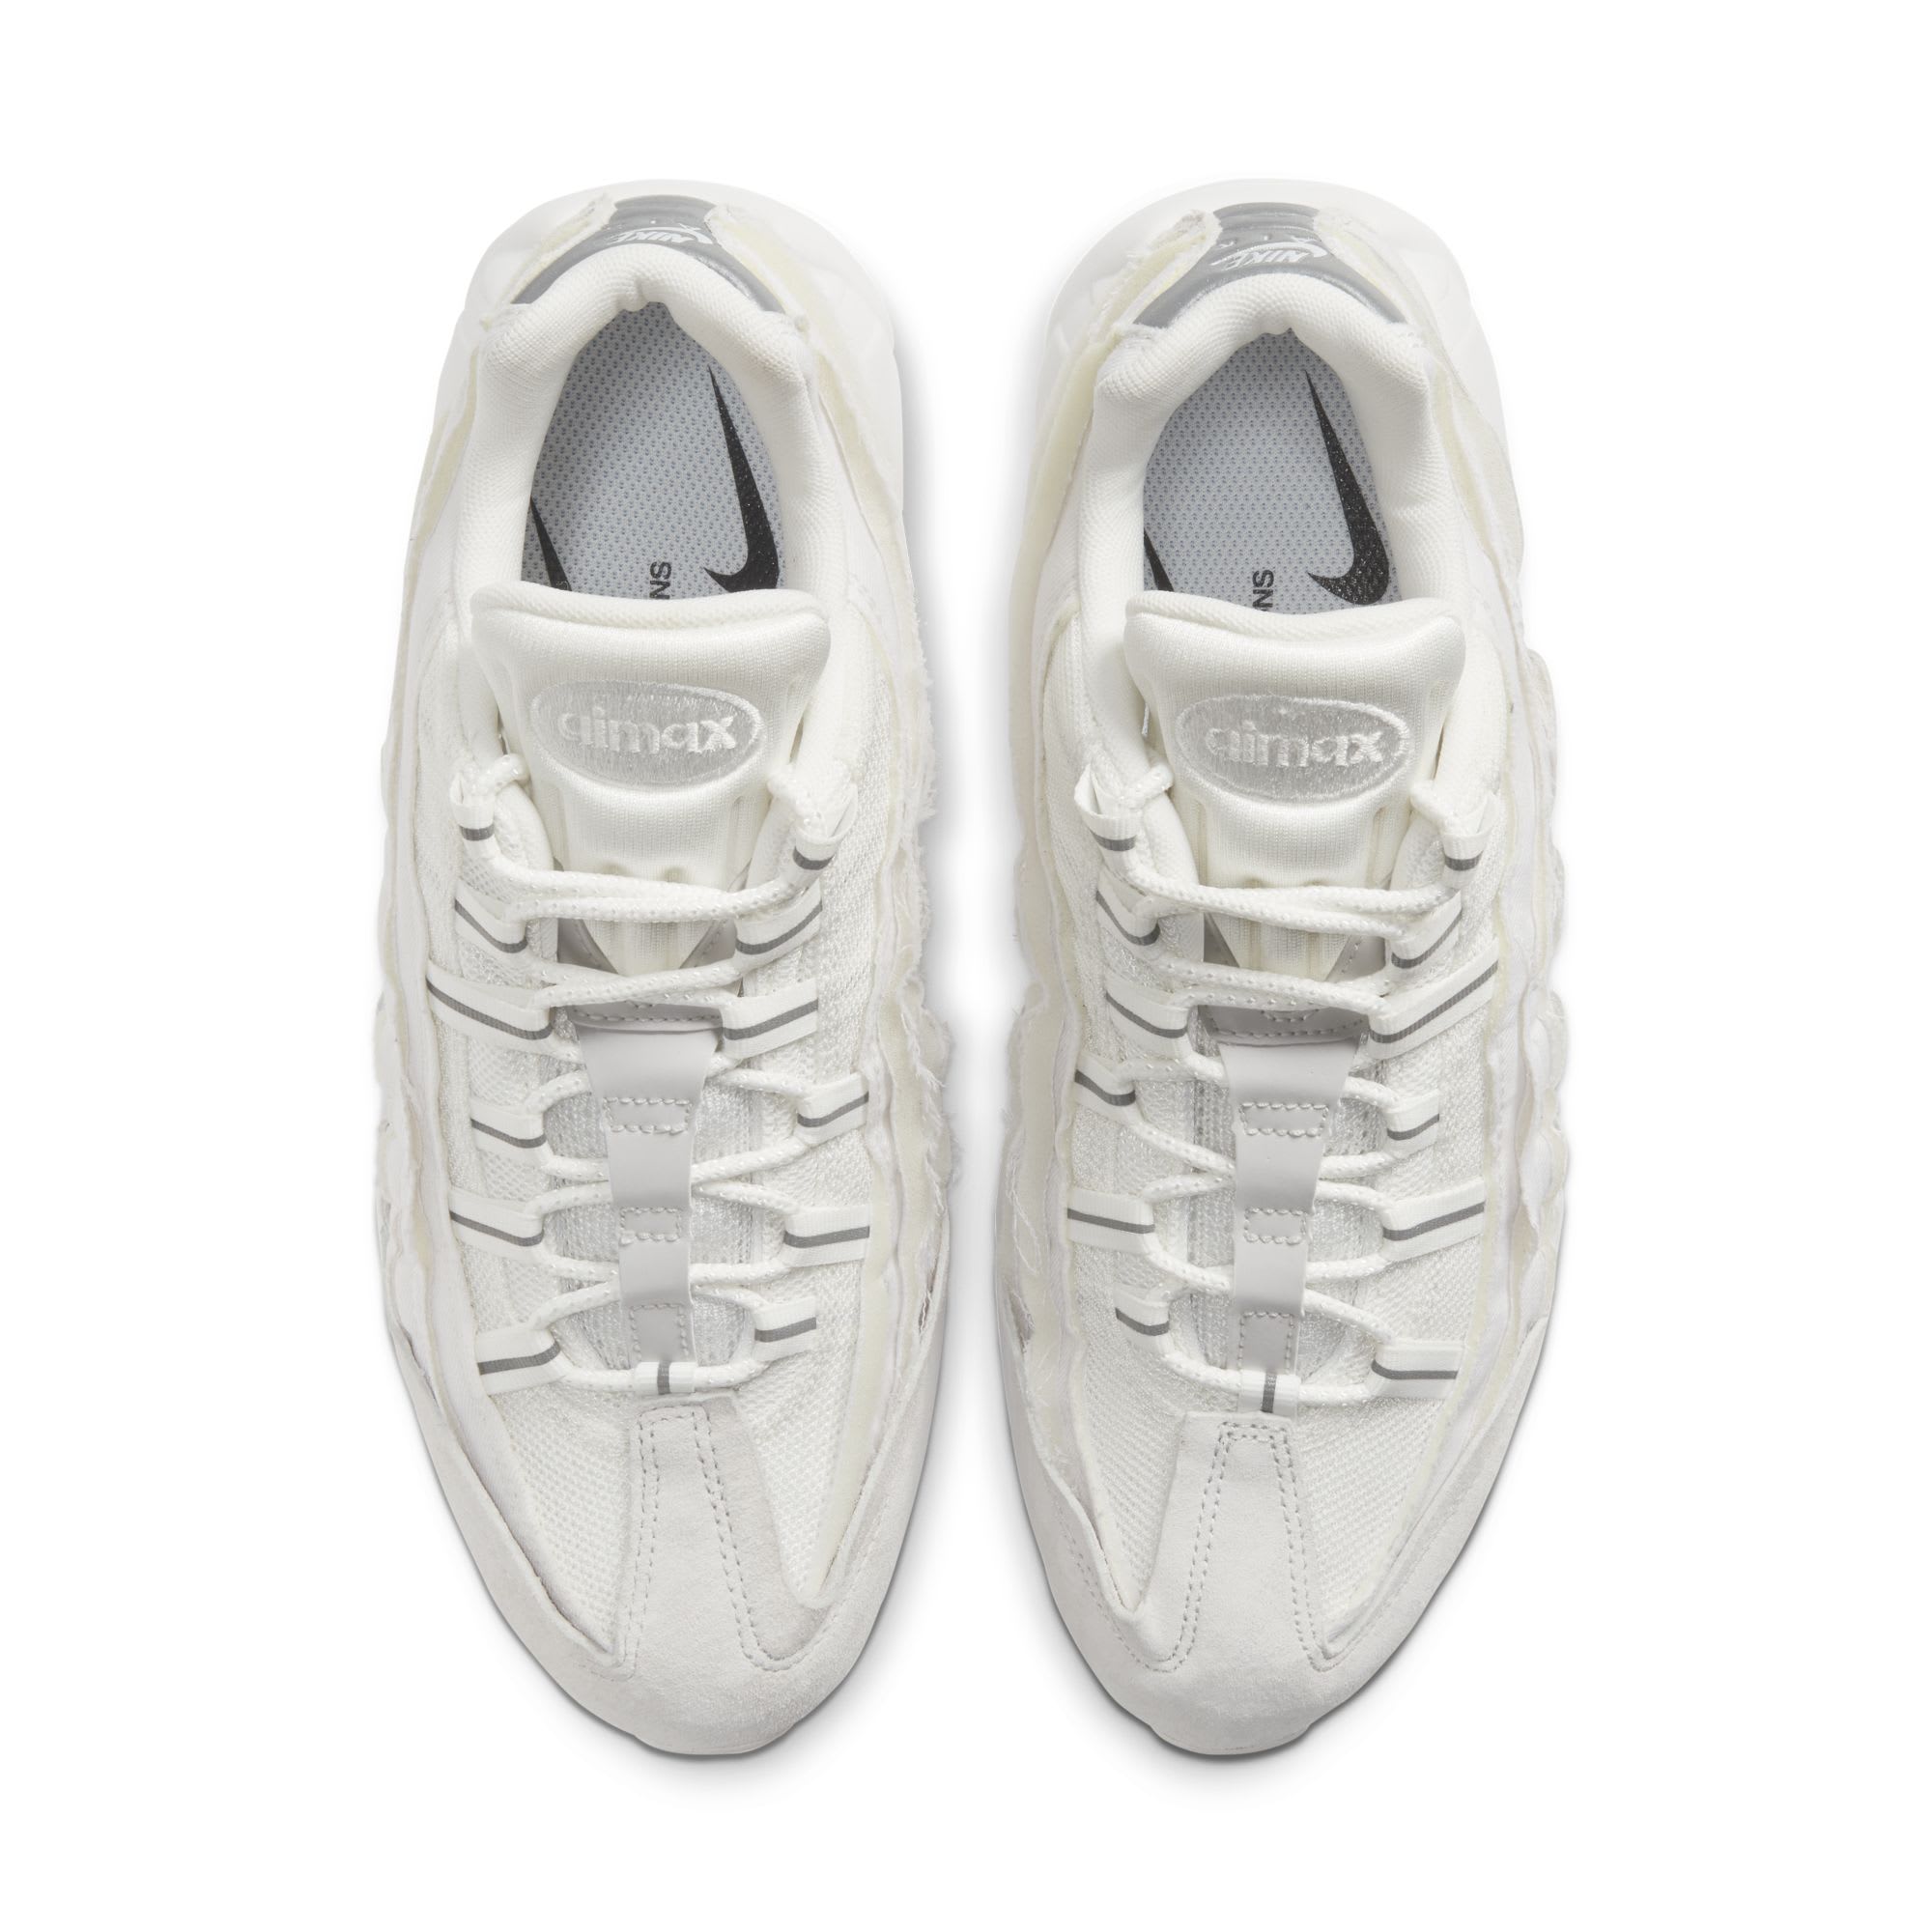 Comme des Garçons x Nike Air Max 95 'White' (Top)